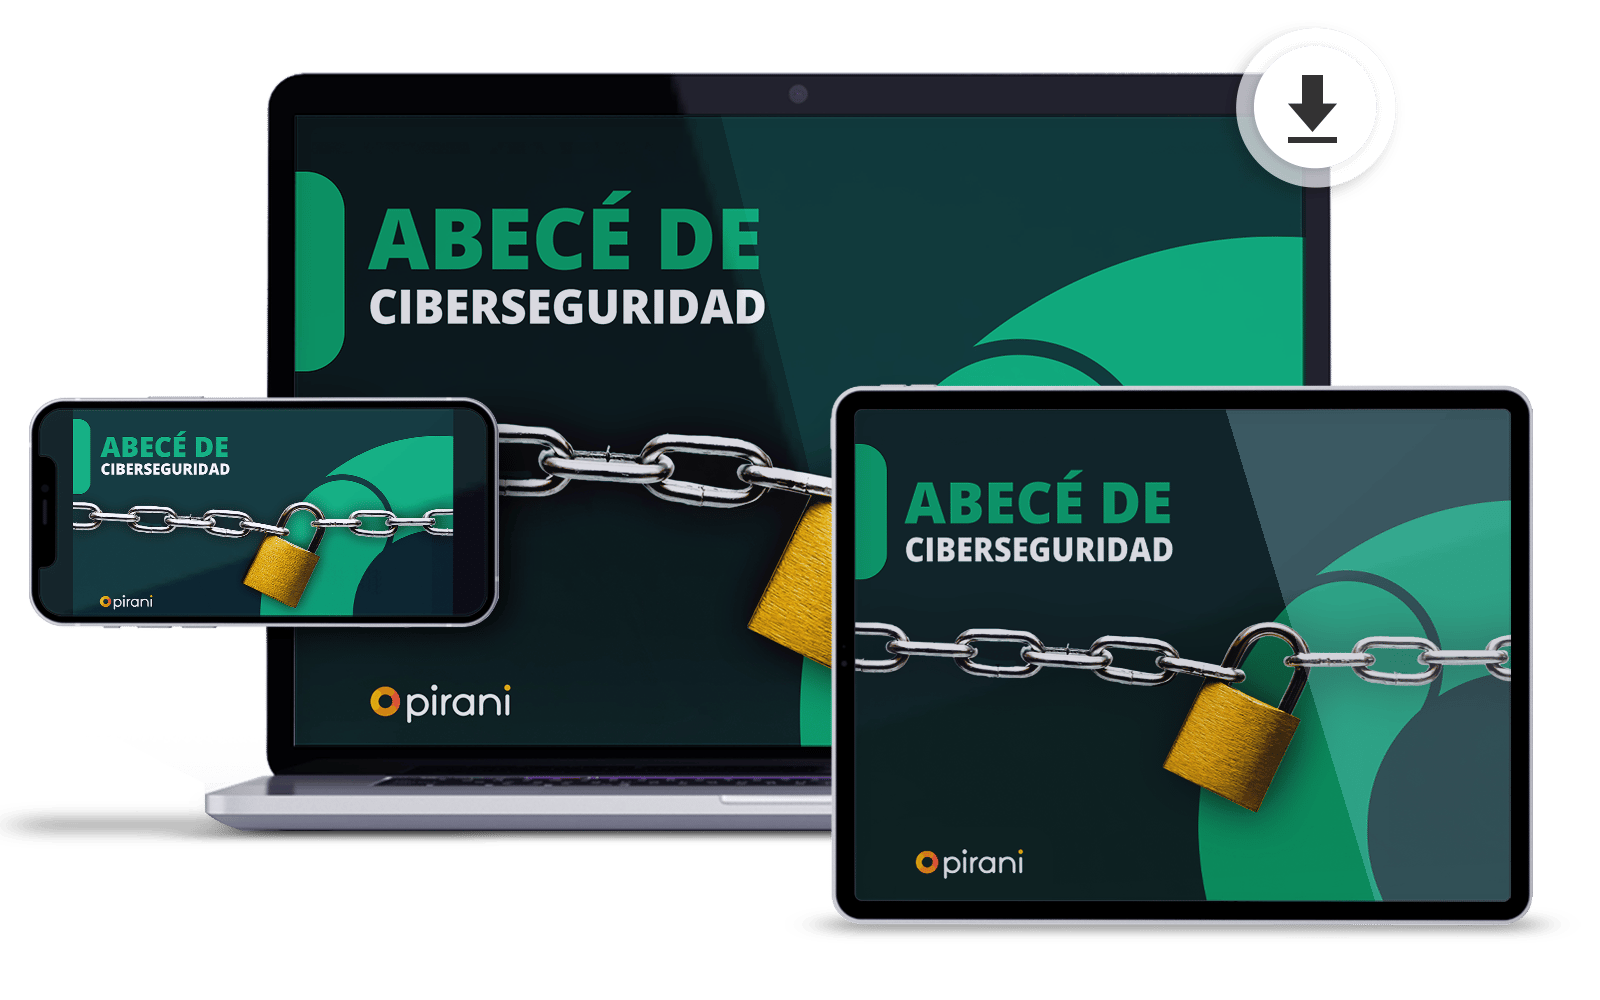 Ebook_download-Abece-de-ciberseguridad